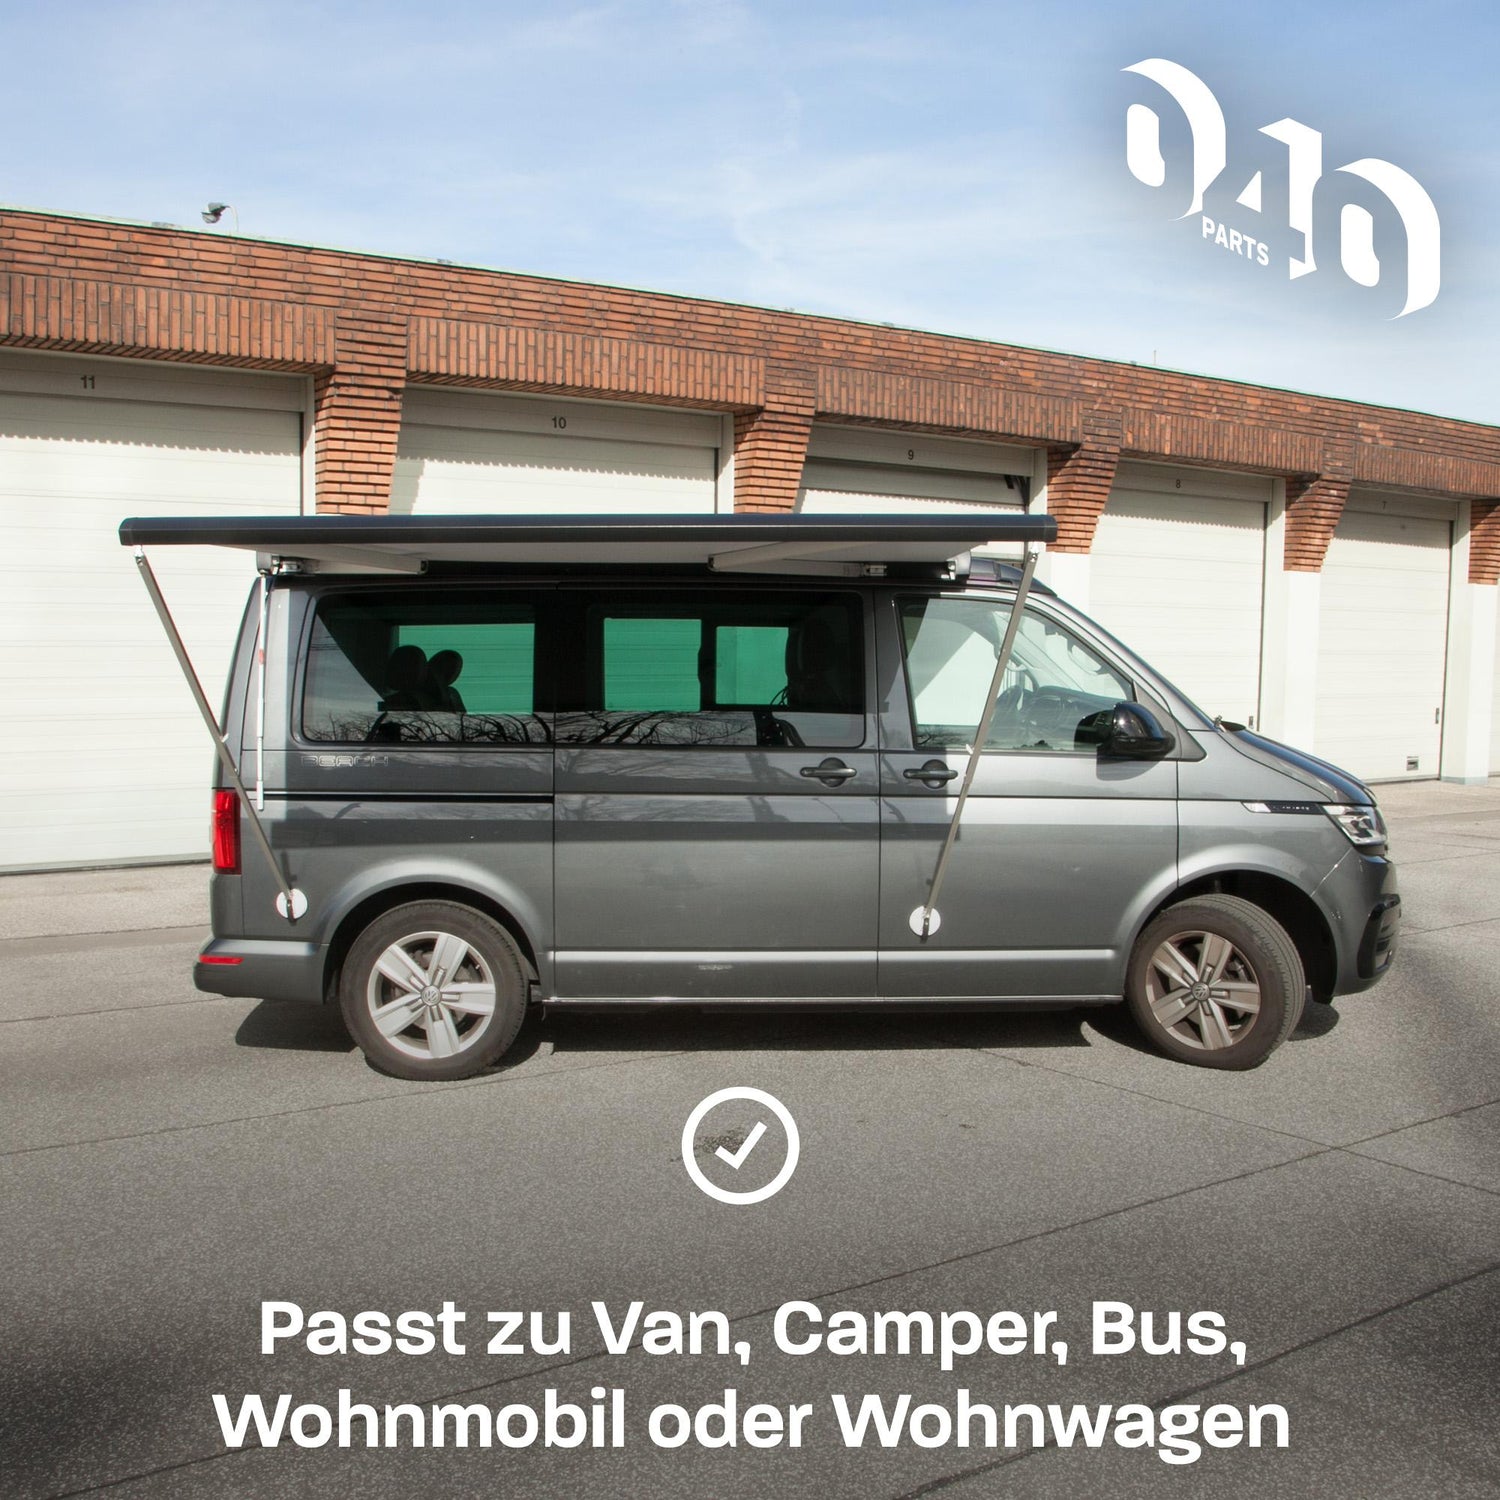 040 Parts Schuhregal GRAU BEIFAHRERSEITE Zubehör passend für VW T5 T6 –  Mixcover